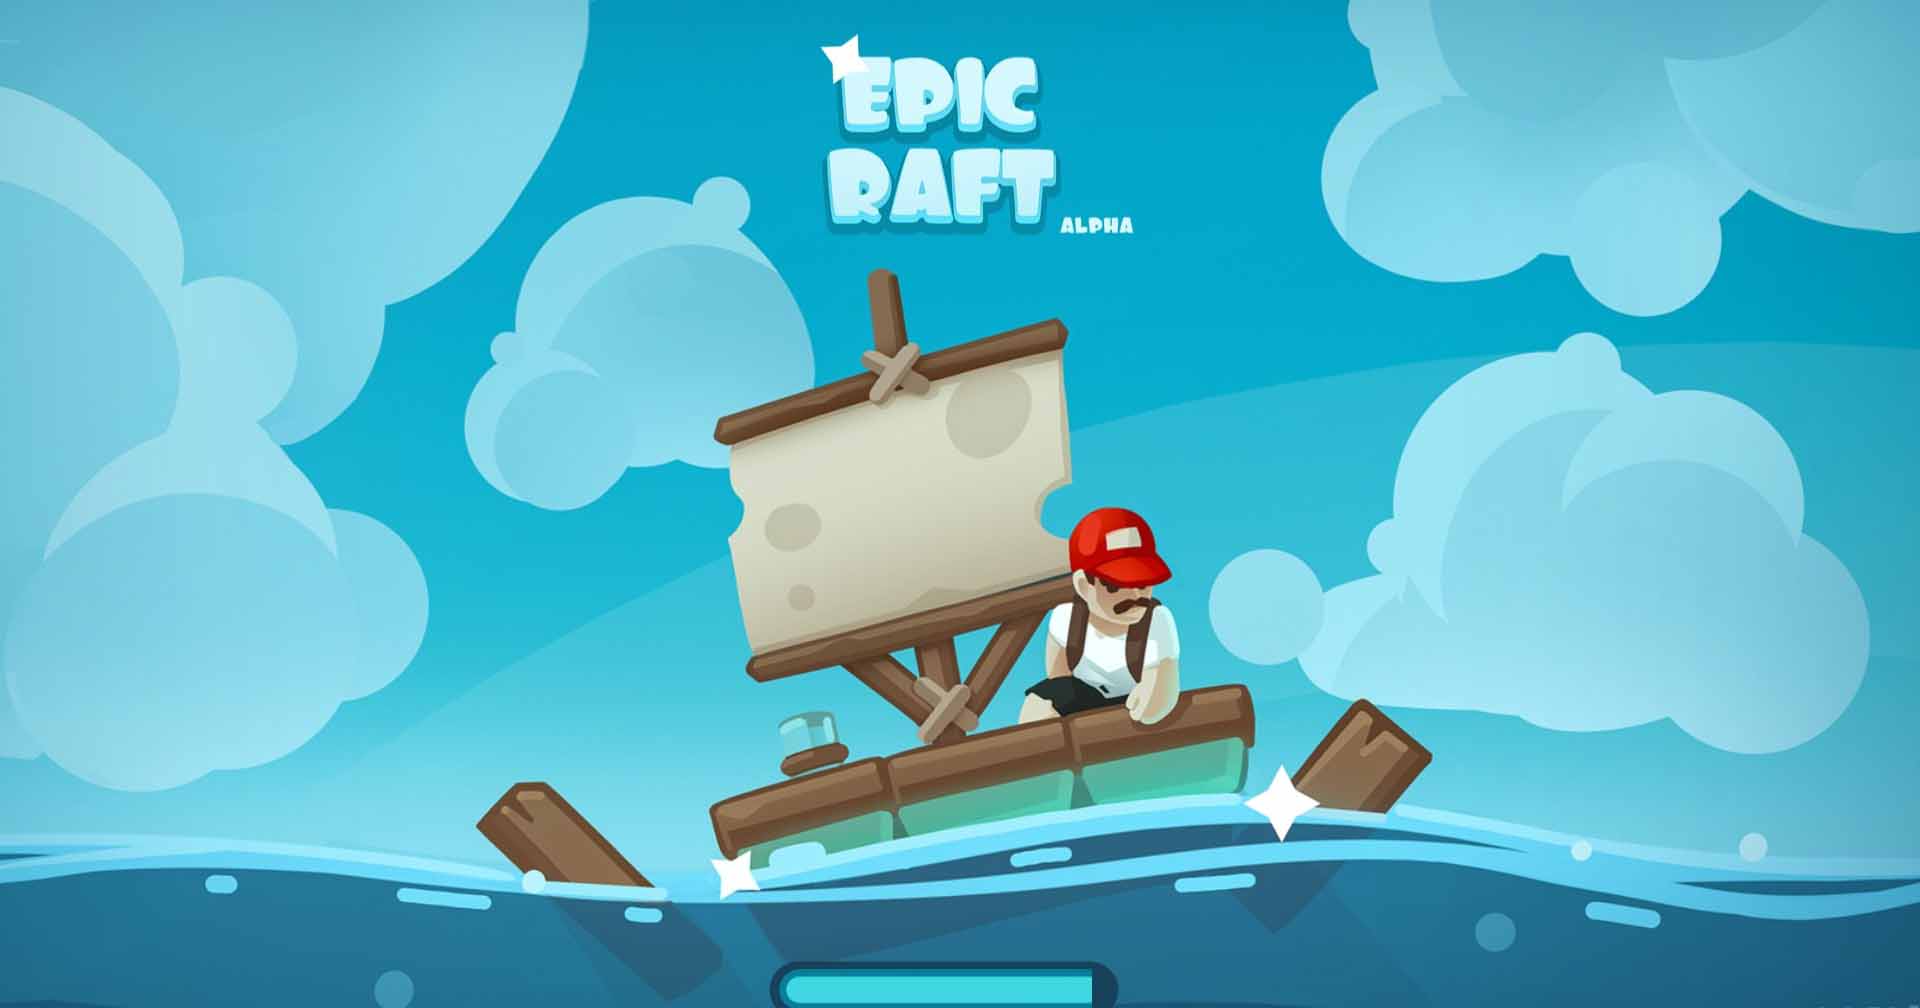 [รีวิวเกม] Epic Raft เกมมือถือ Survival เอาชีวิตรอดต่อแพไม่จบสิ้น